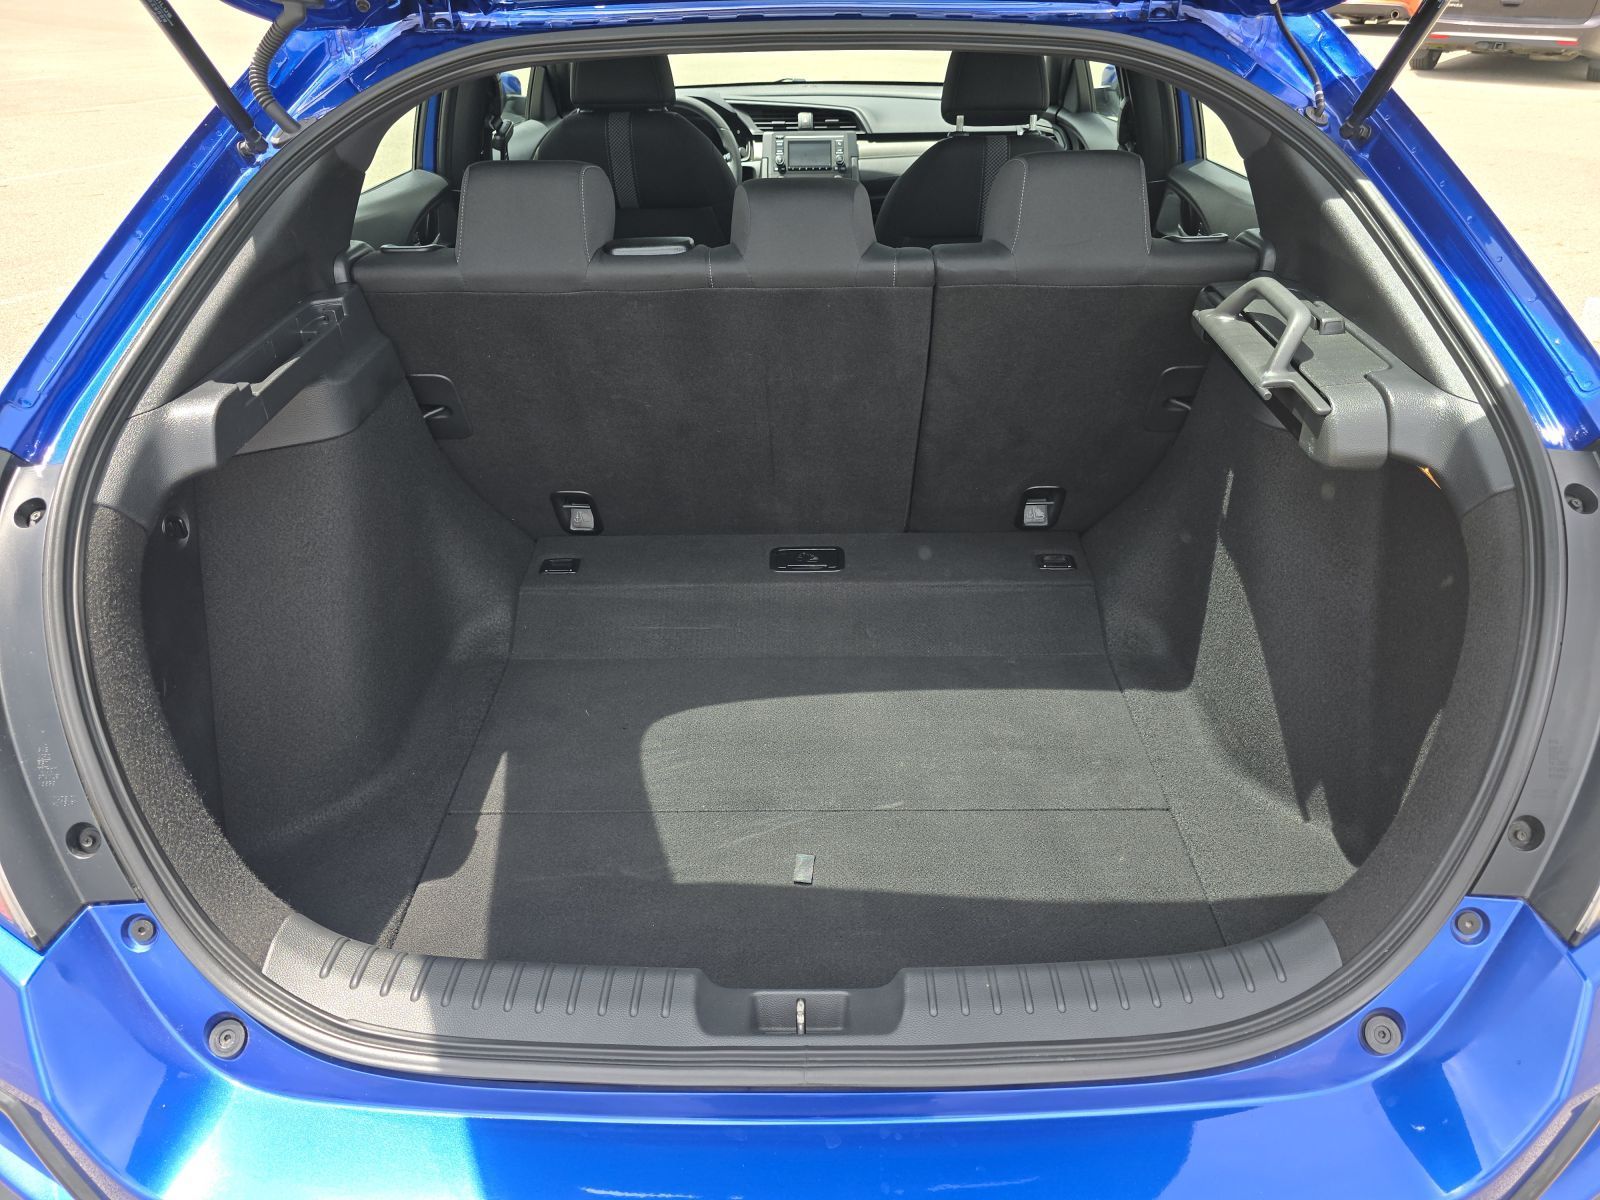 Used, 2020 Honda Civic LX CVT, Blue, G0730A-16